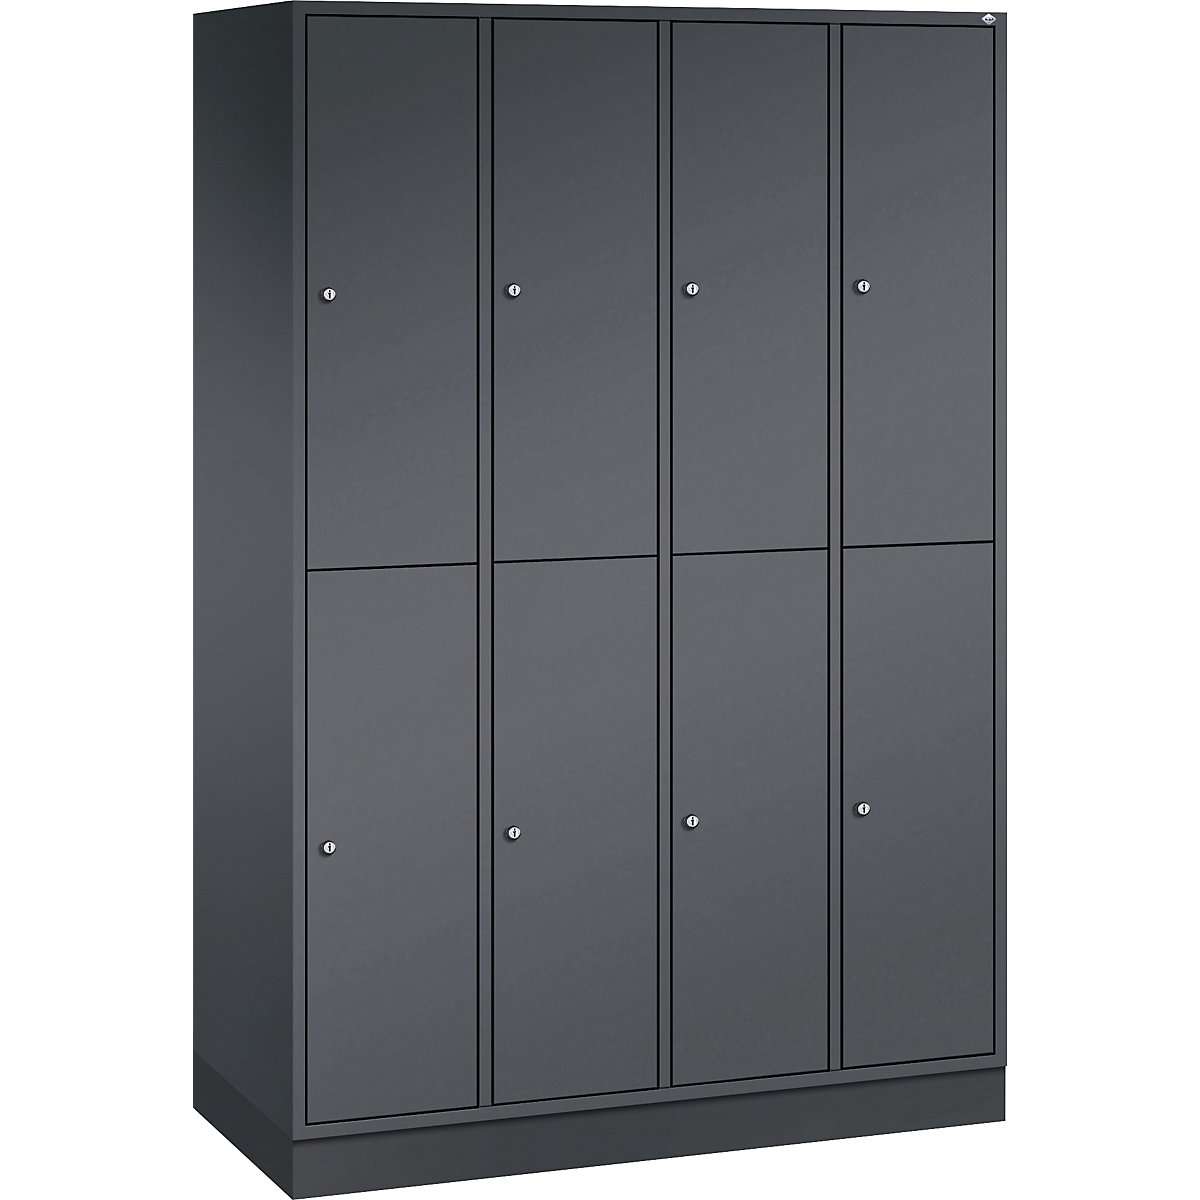 INTRO double tier steel cloakroom locker – C+P